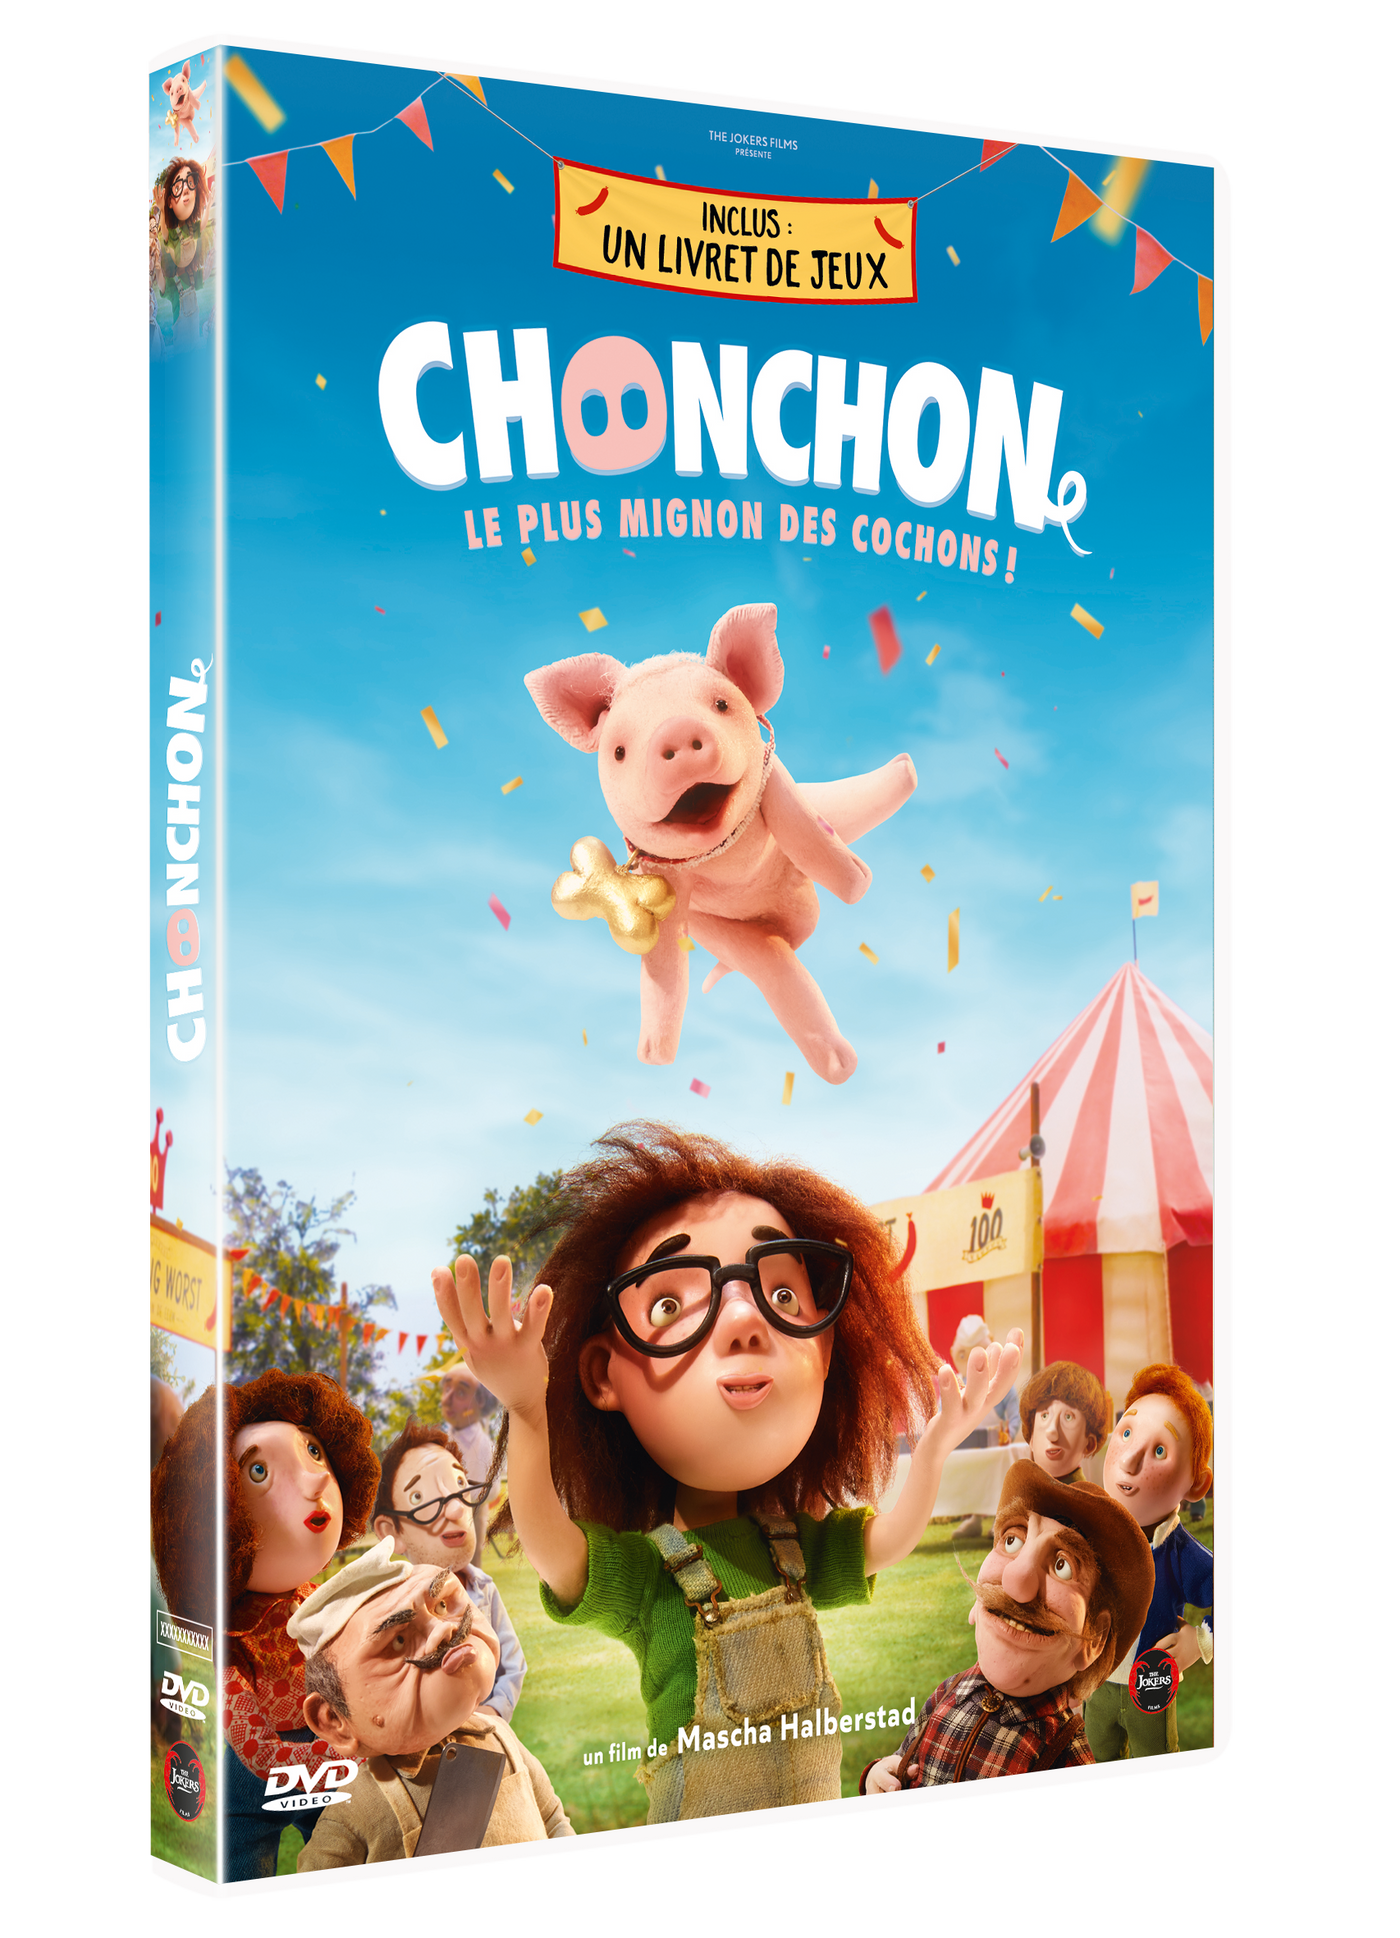 DVD "Chonchon"